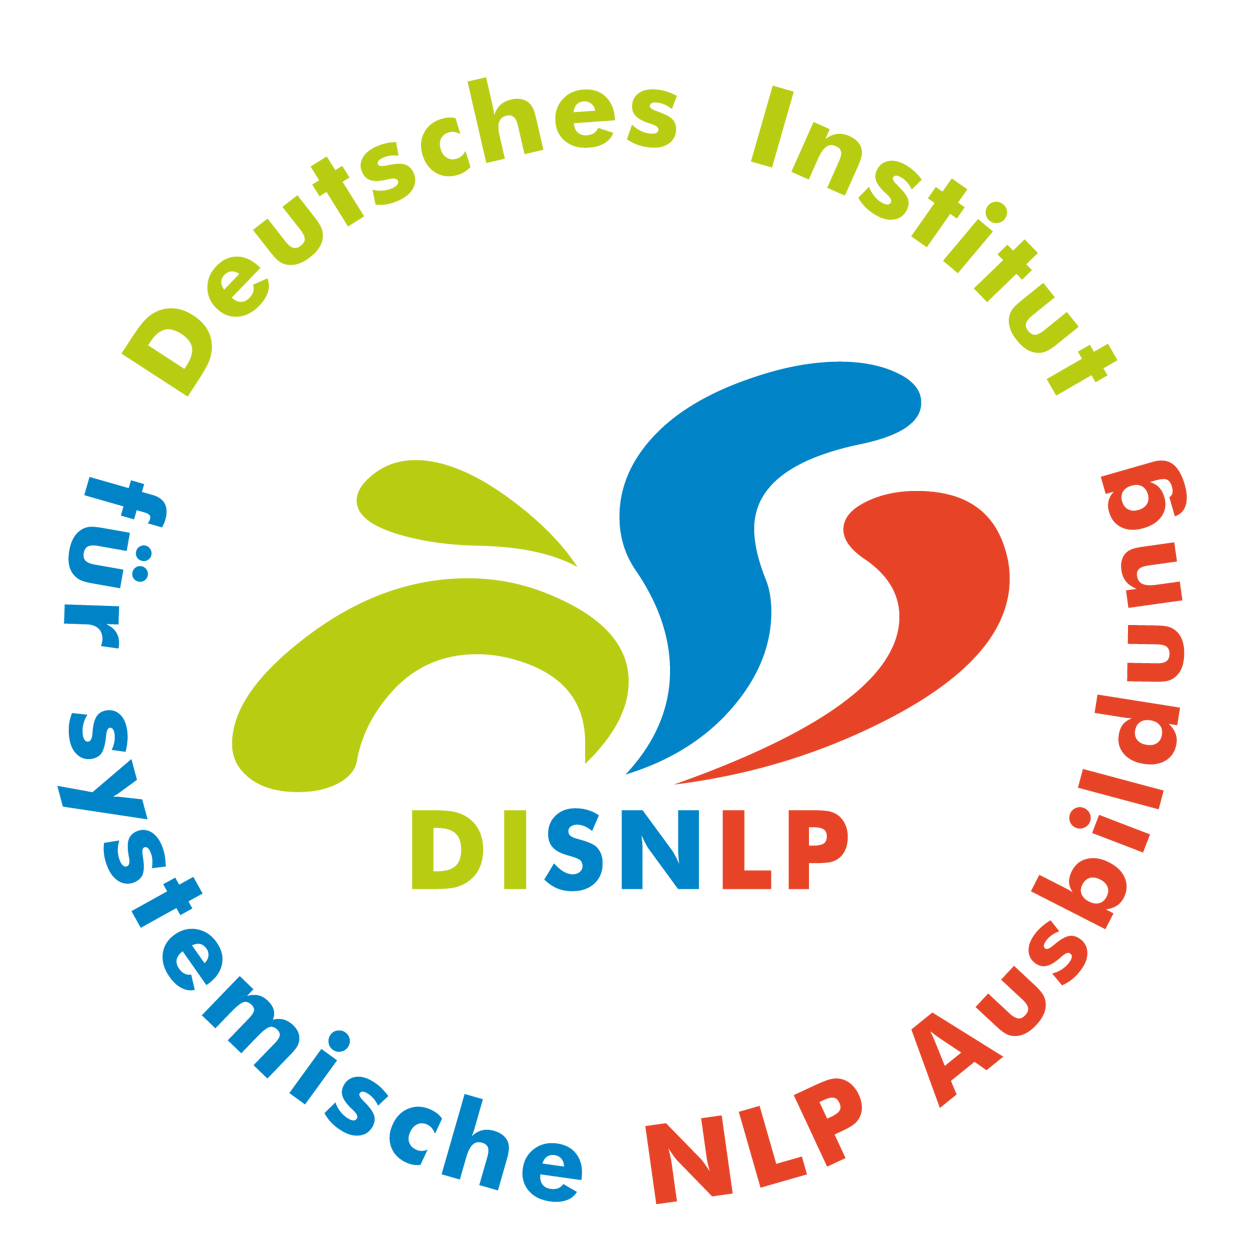 Seminar Selbstbewusstsein, Selbstvertrauen, Selbstwert, Selbstsicherheit stärken Guenzburg Landkreis mit NLP Coaching Kurs für mehr Selbstbewusstsein